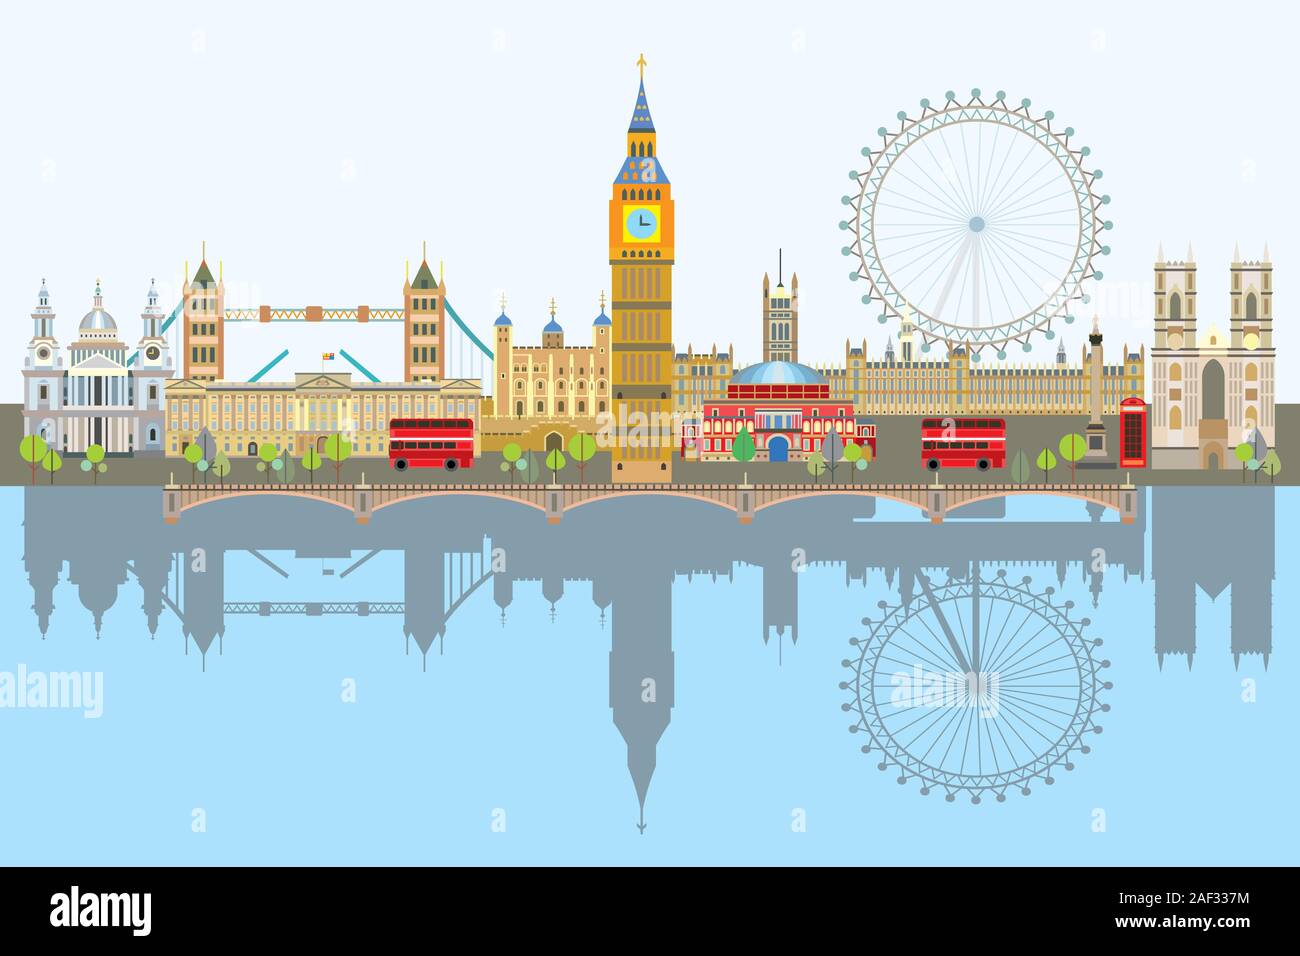 Bunte vektor Illustration des Londoner Sehenswürdigkeiten mit Reflexion im Wasser. Skyline der Stadt Vektor isoliert Abbildung. Vektor London Hintergrund. Vecto Stock Vektor